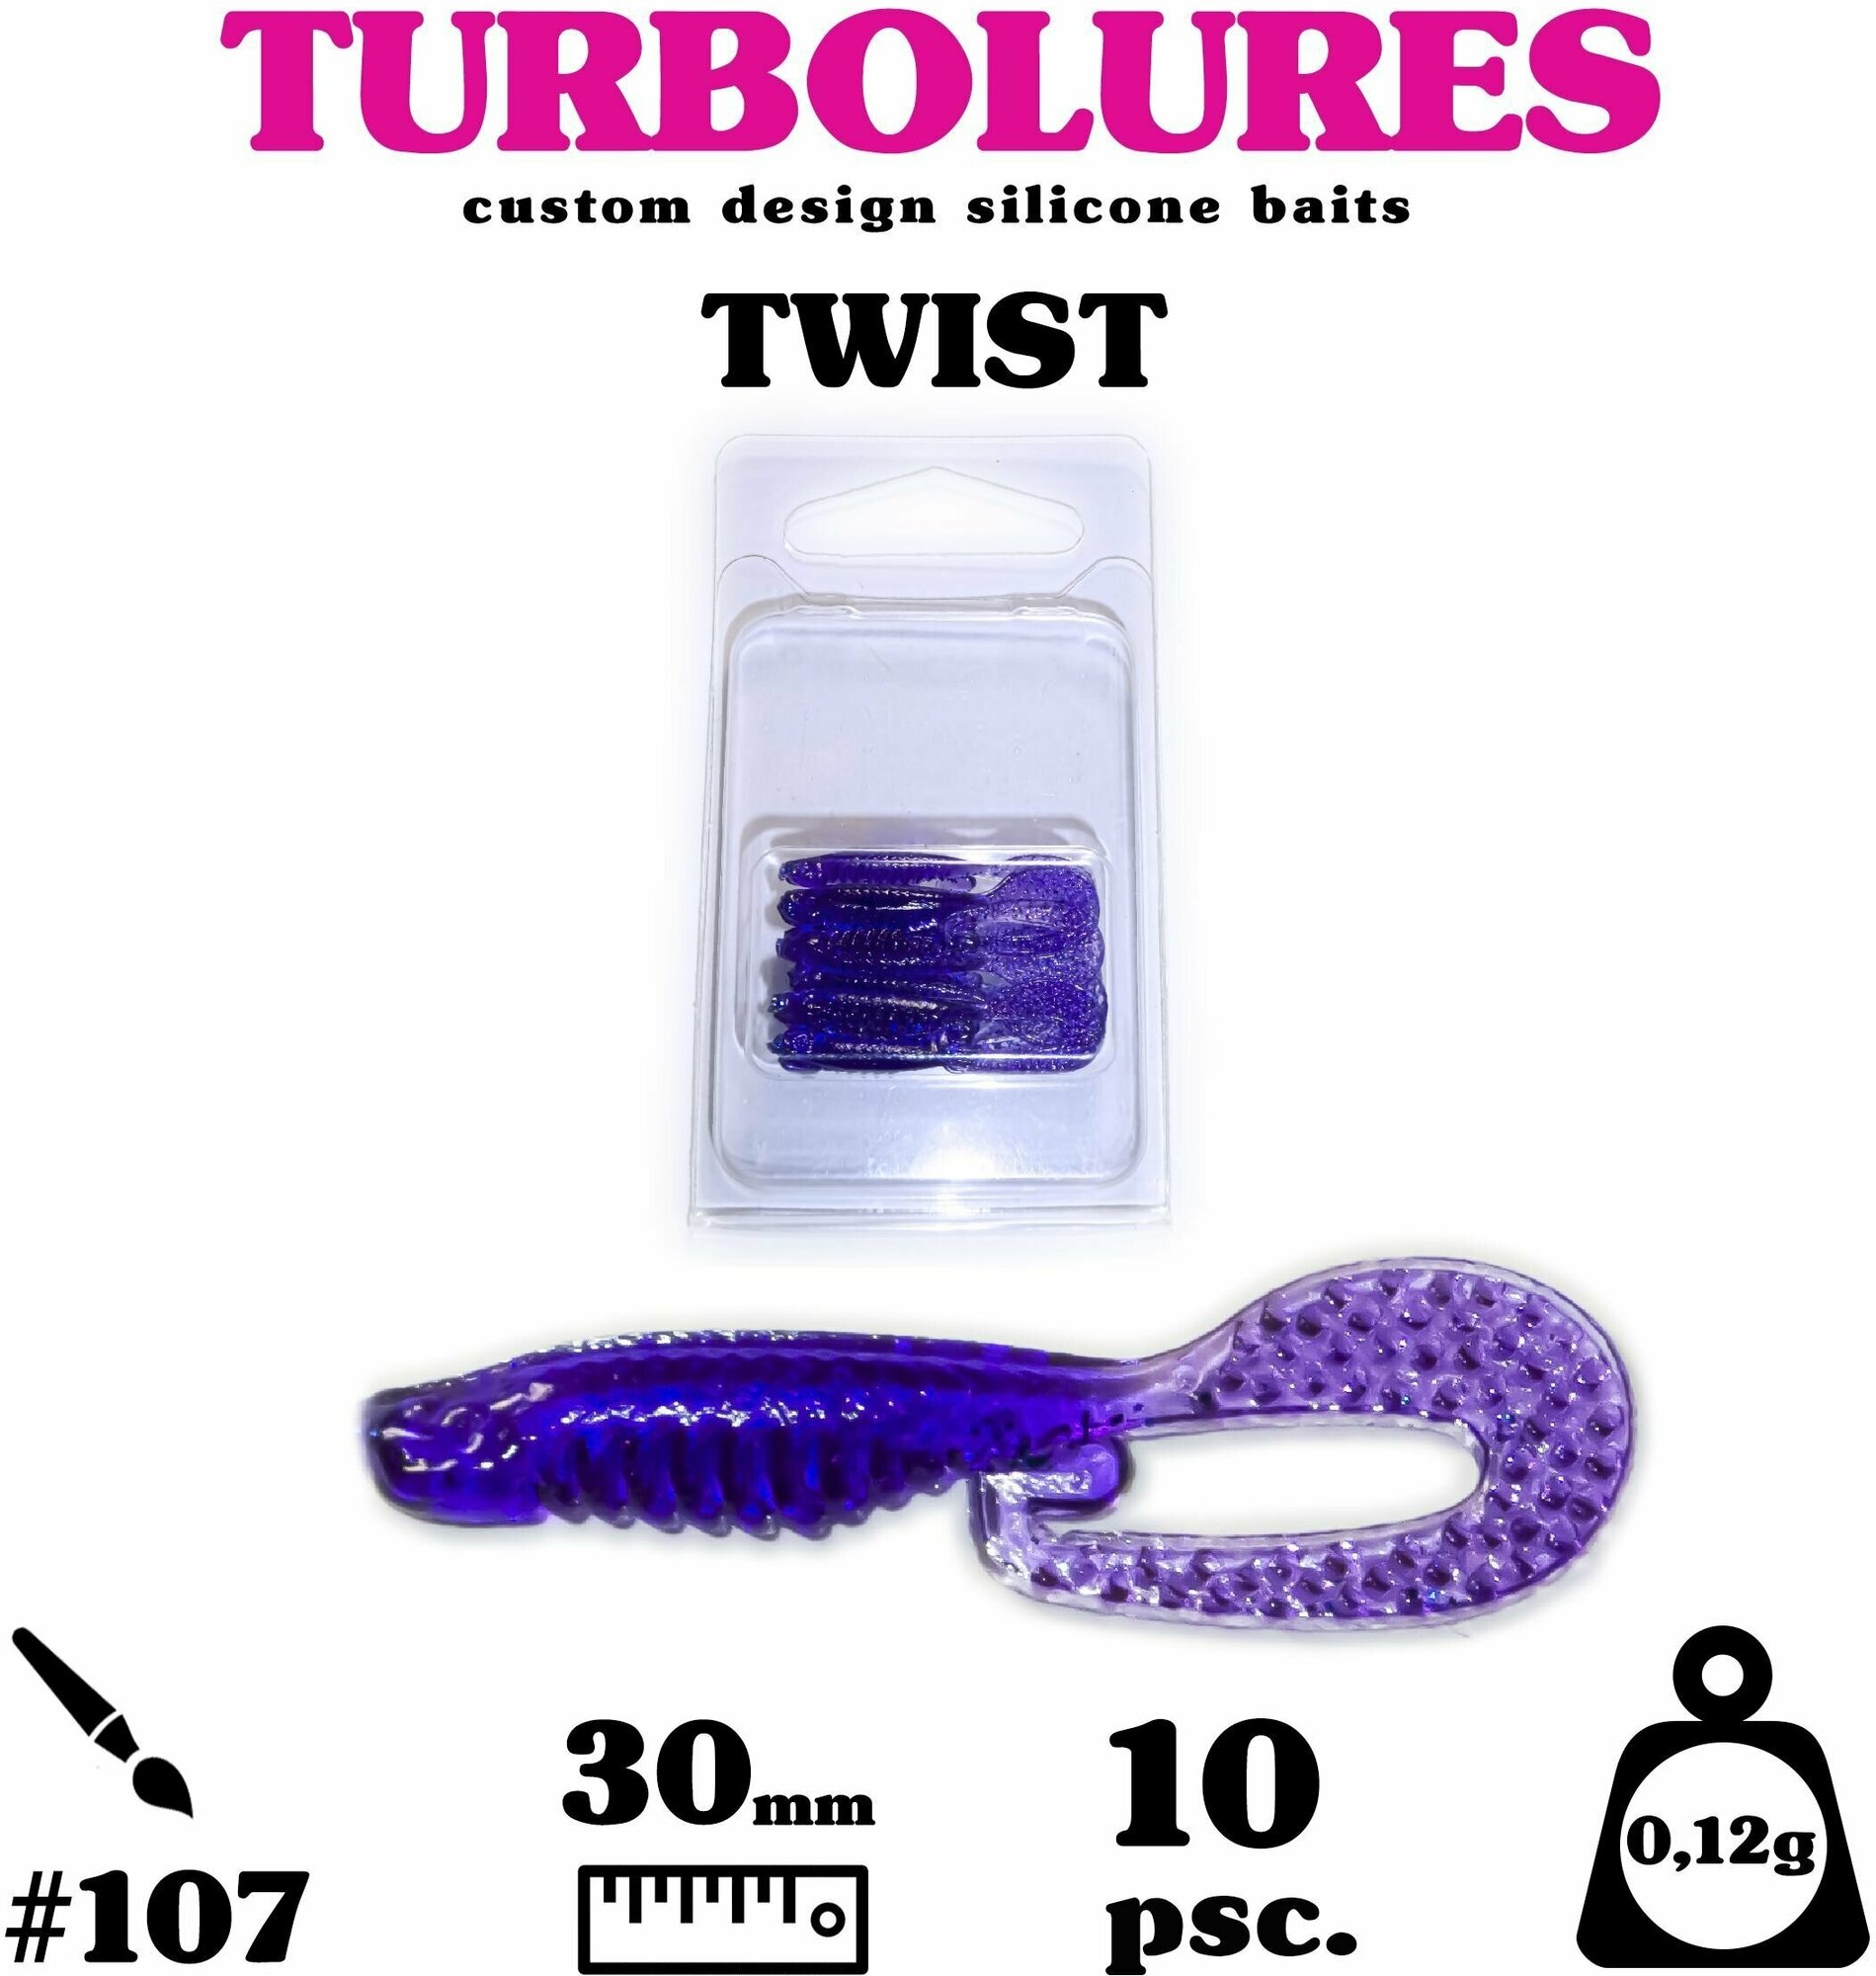 Мягкая приманка / силиконовая приманка / рыболовный набор / Turbolures Турболюрес / ТWISТ #107 30 мм 0,12 гр твистер 10 шт.